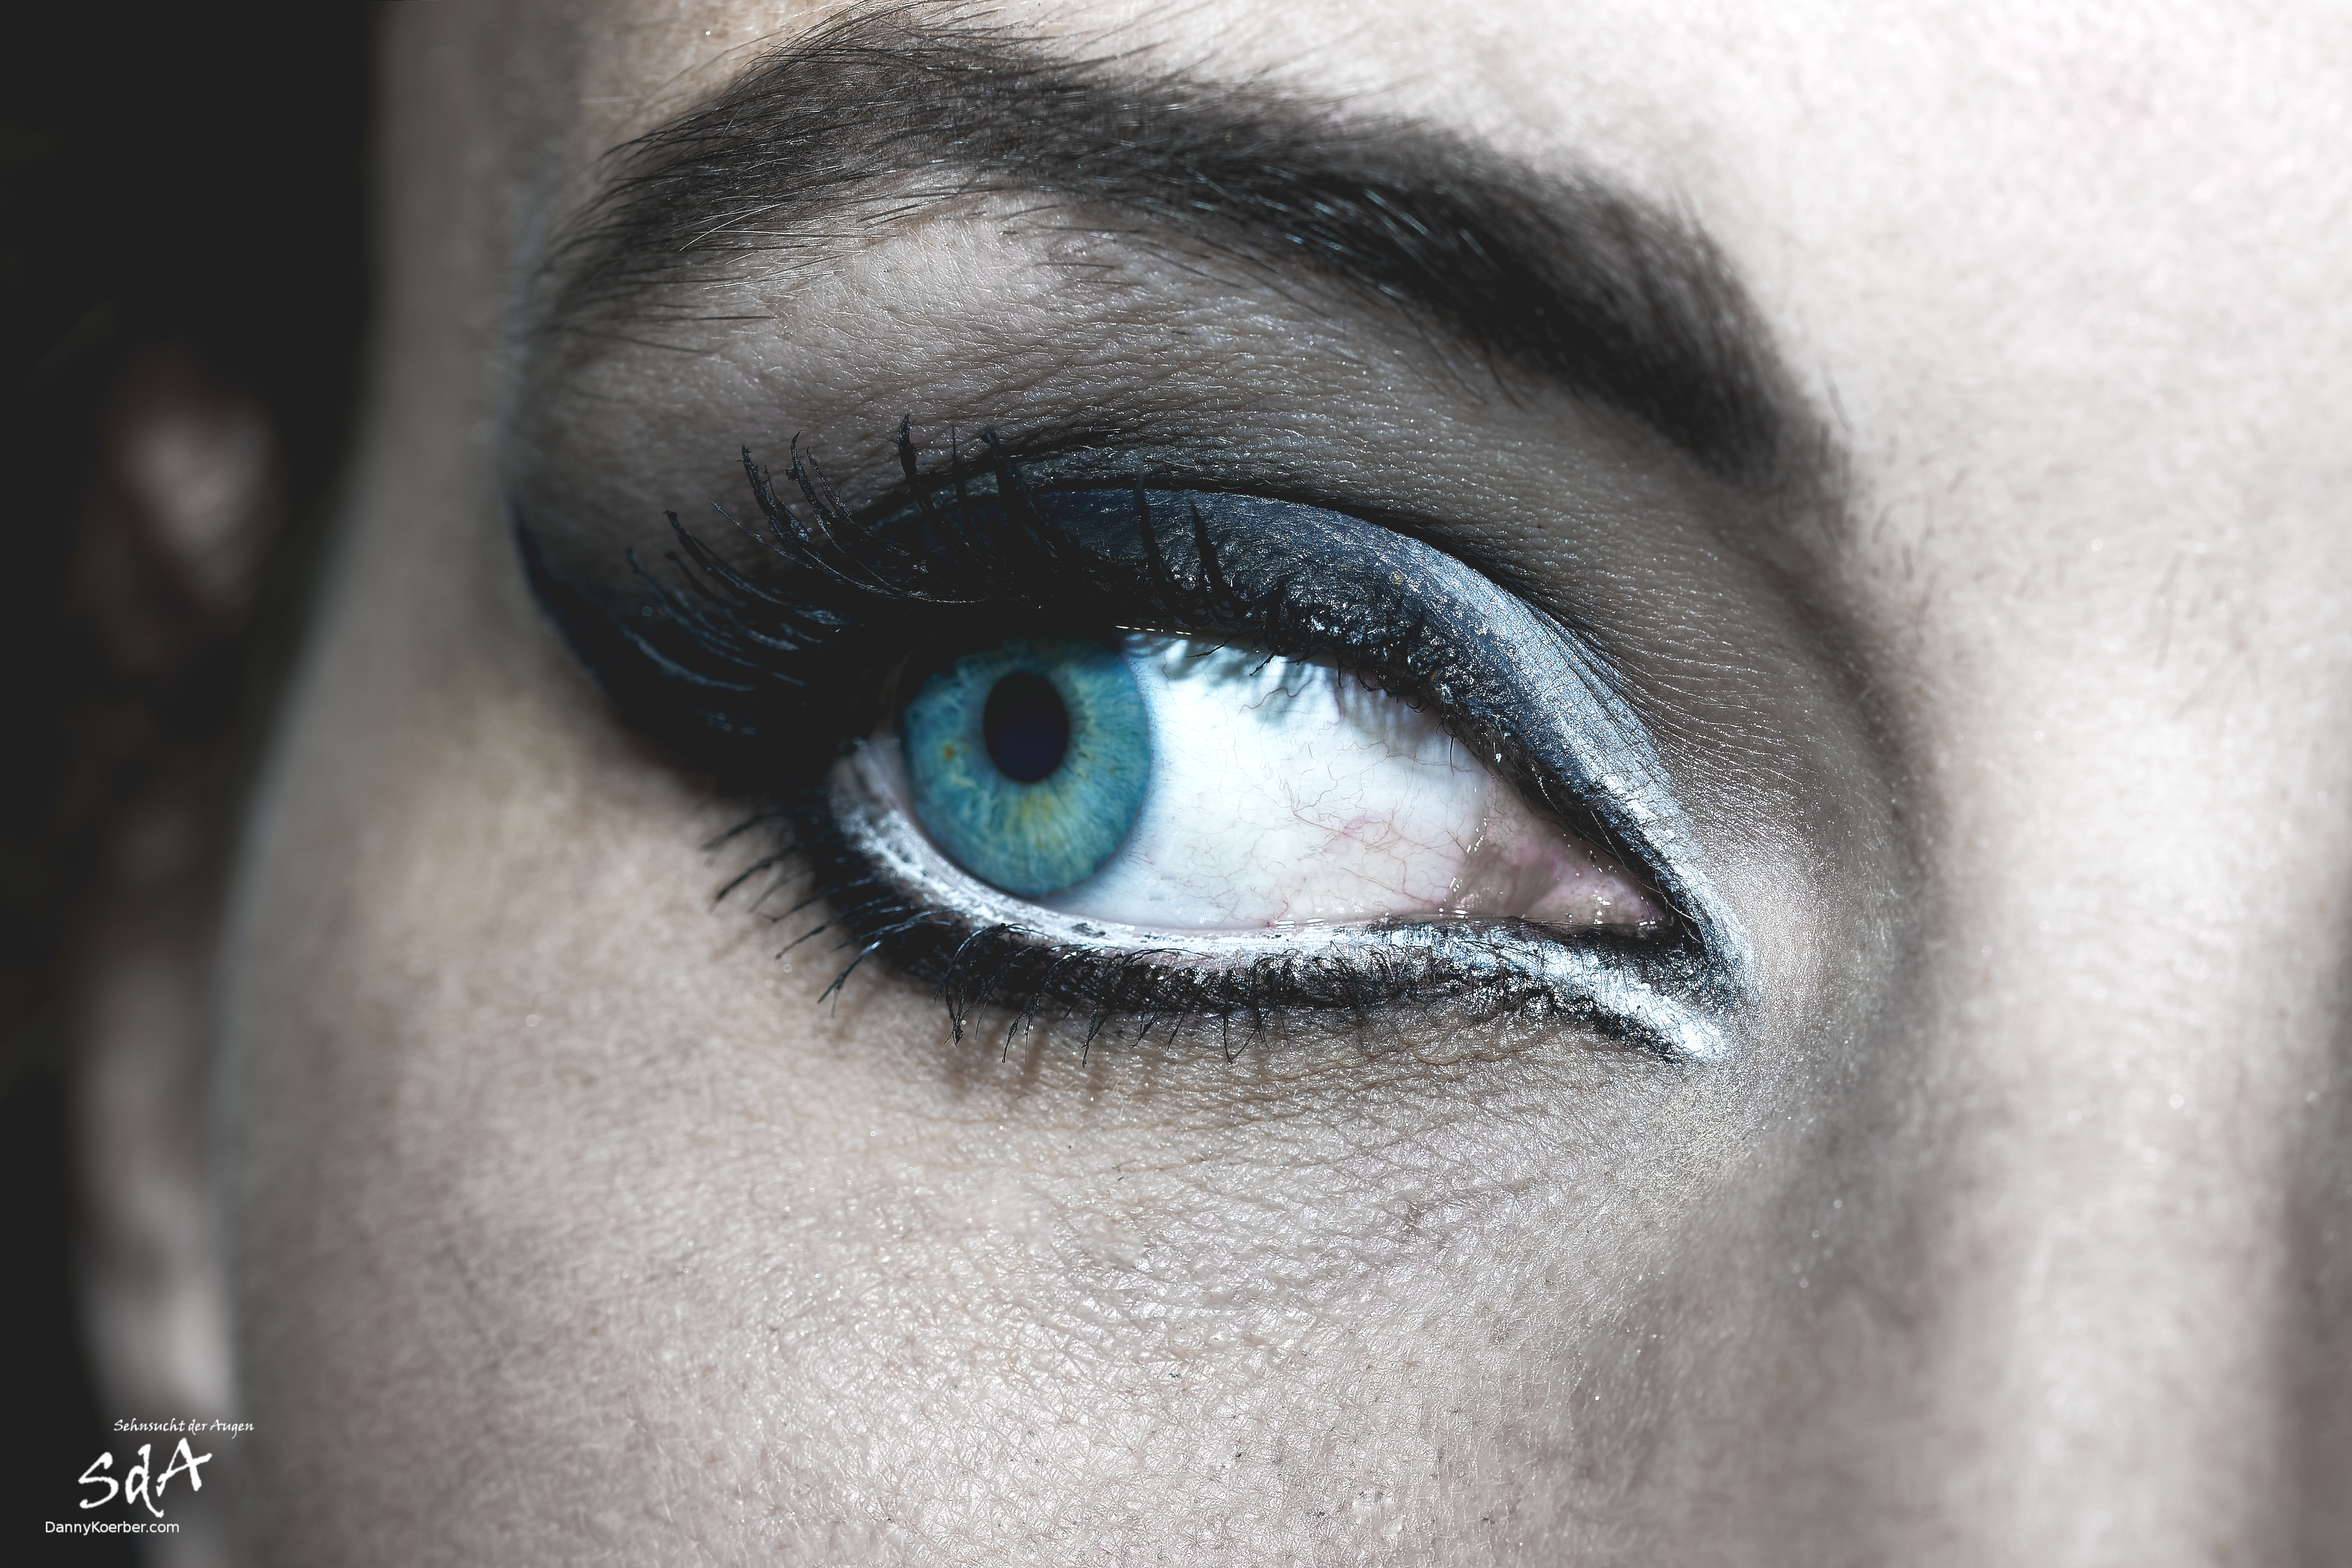 Das Auge im Blick. Nahaufnahme eines Auges, fotografiert von Danny Koerber für Sehnsucht der Augen.